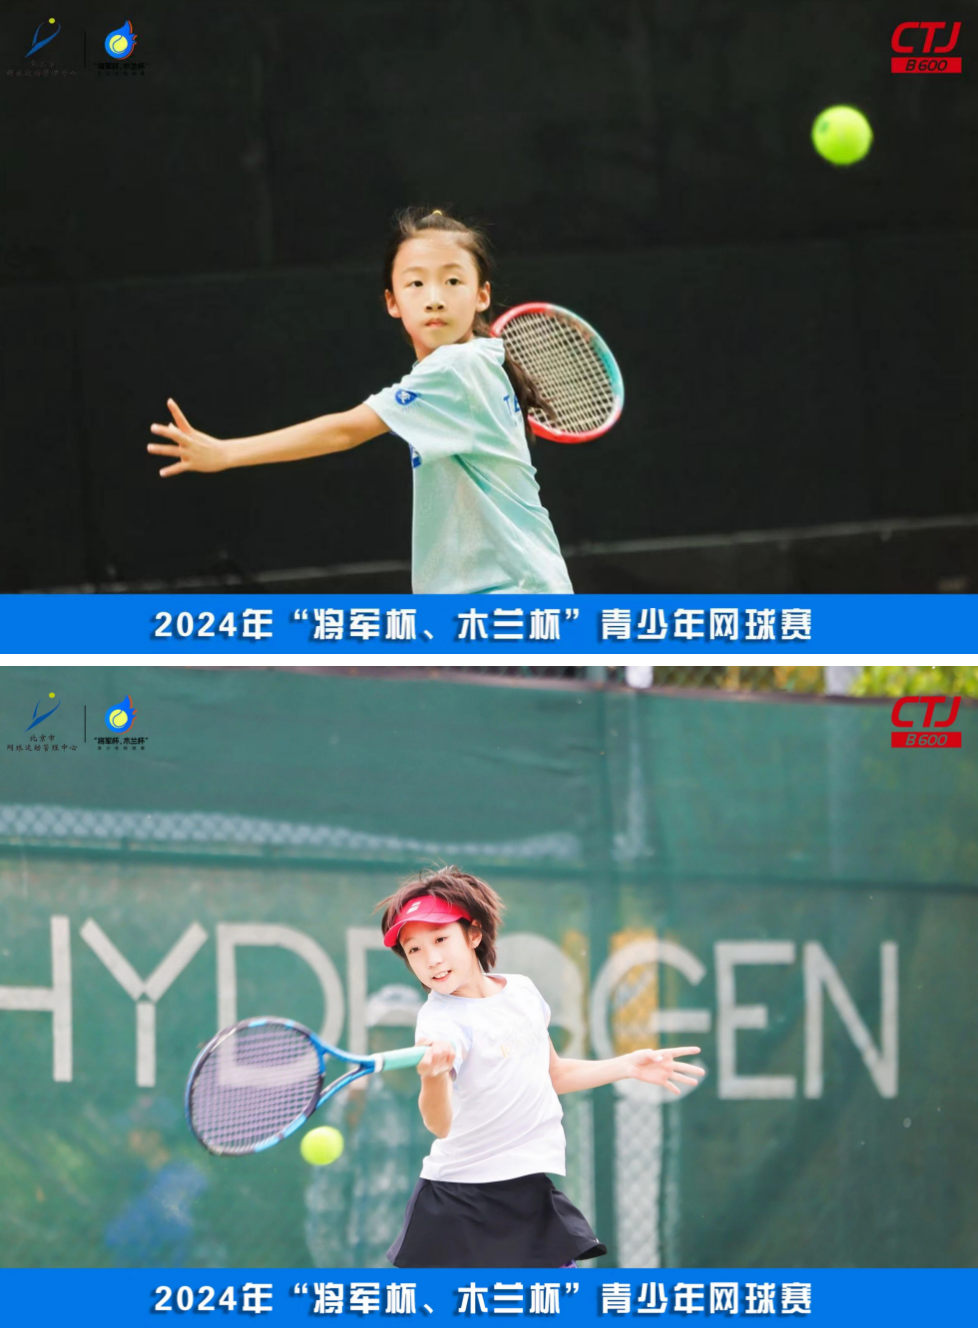 协同发展十周年，三地共绘网球梦——2024年第26届“将军杯、木兰杯”青少年网球赛开幕